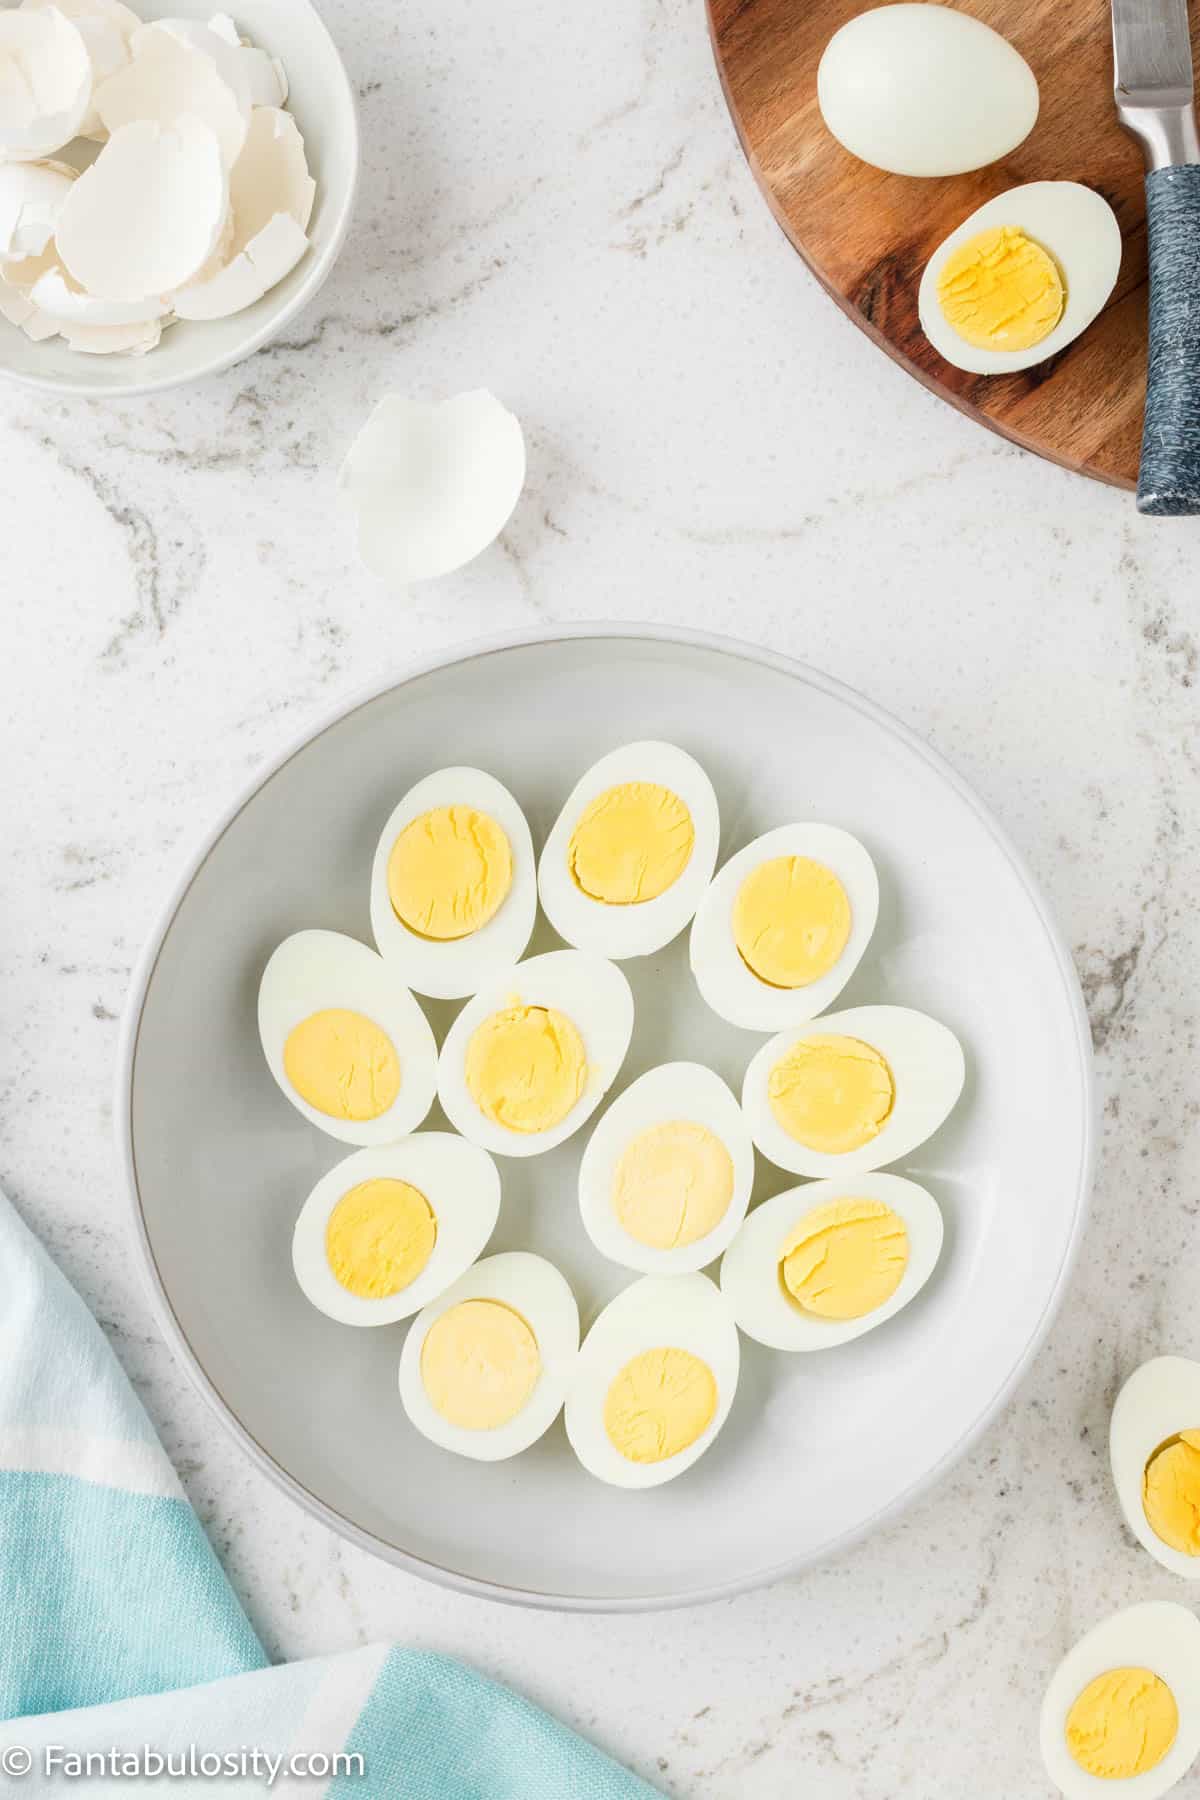 Sliced hard boiled eggs on plate